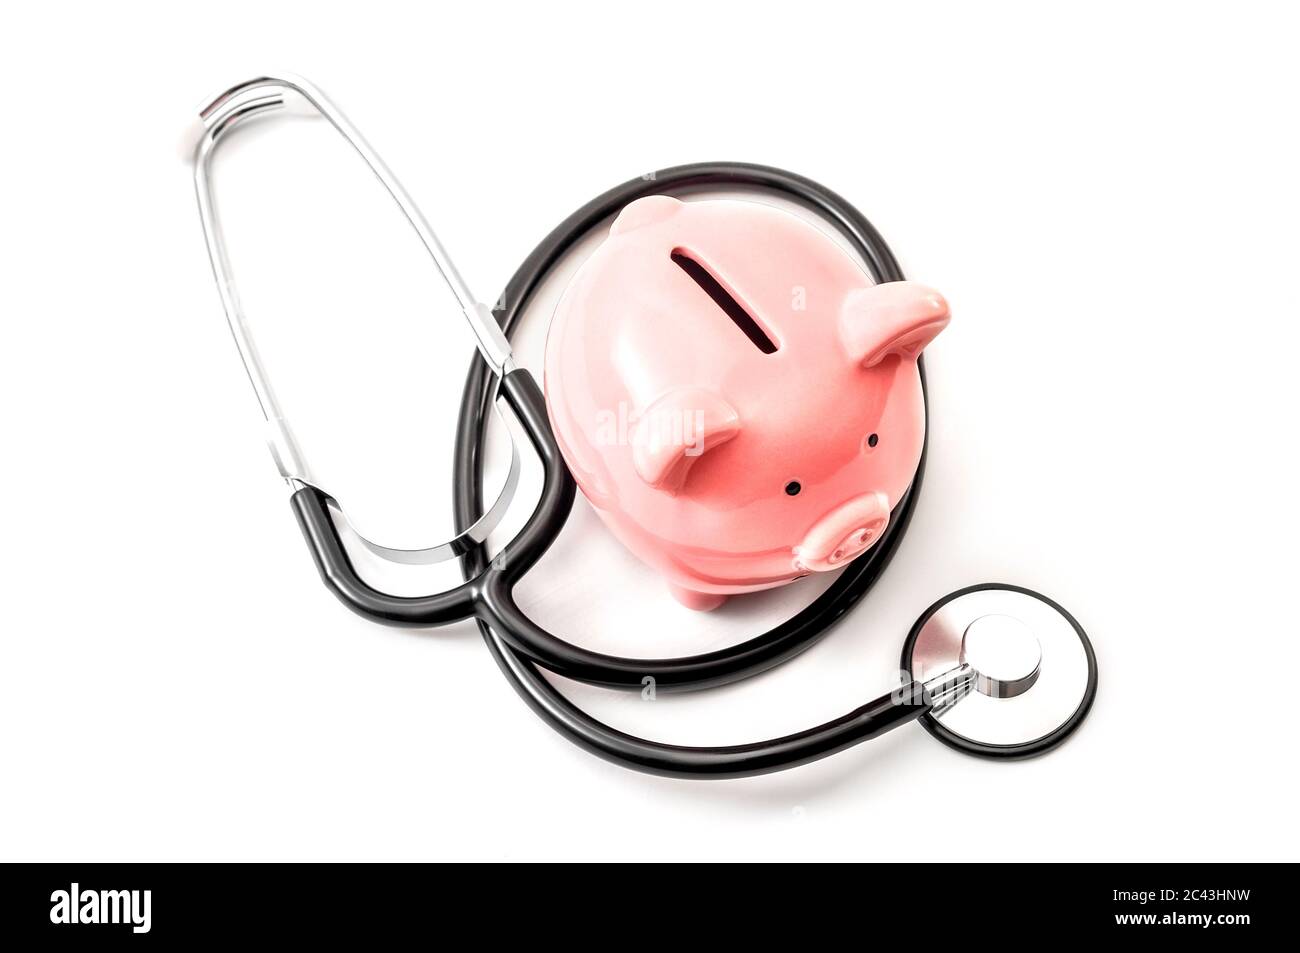 Gesundheitskosten und der hohe Preis der Qualität Krankenversicherung Konzept Thema mit einem Stethoskop und einem rosa Sparschwein isoliert auf weißem Backgroun Stockfoto